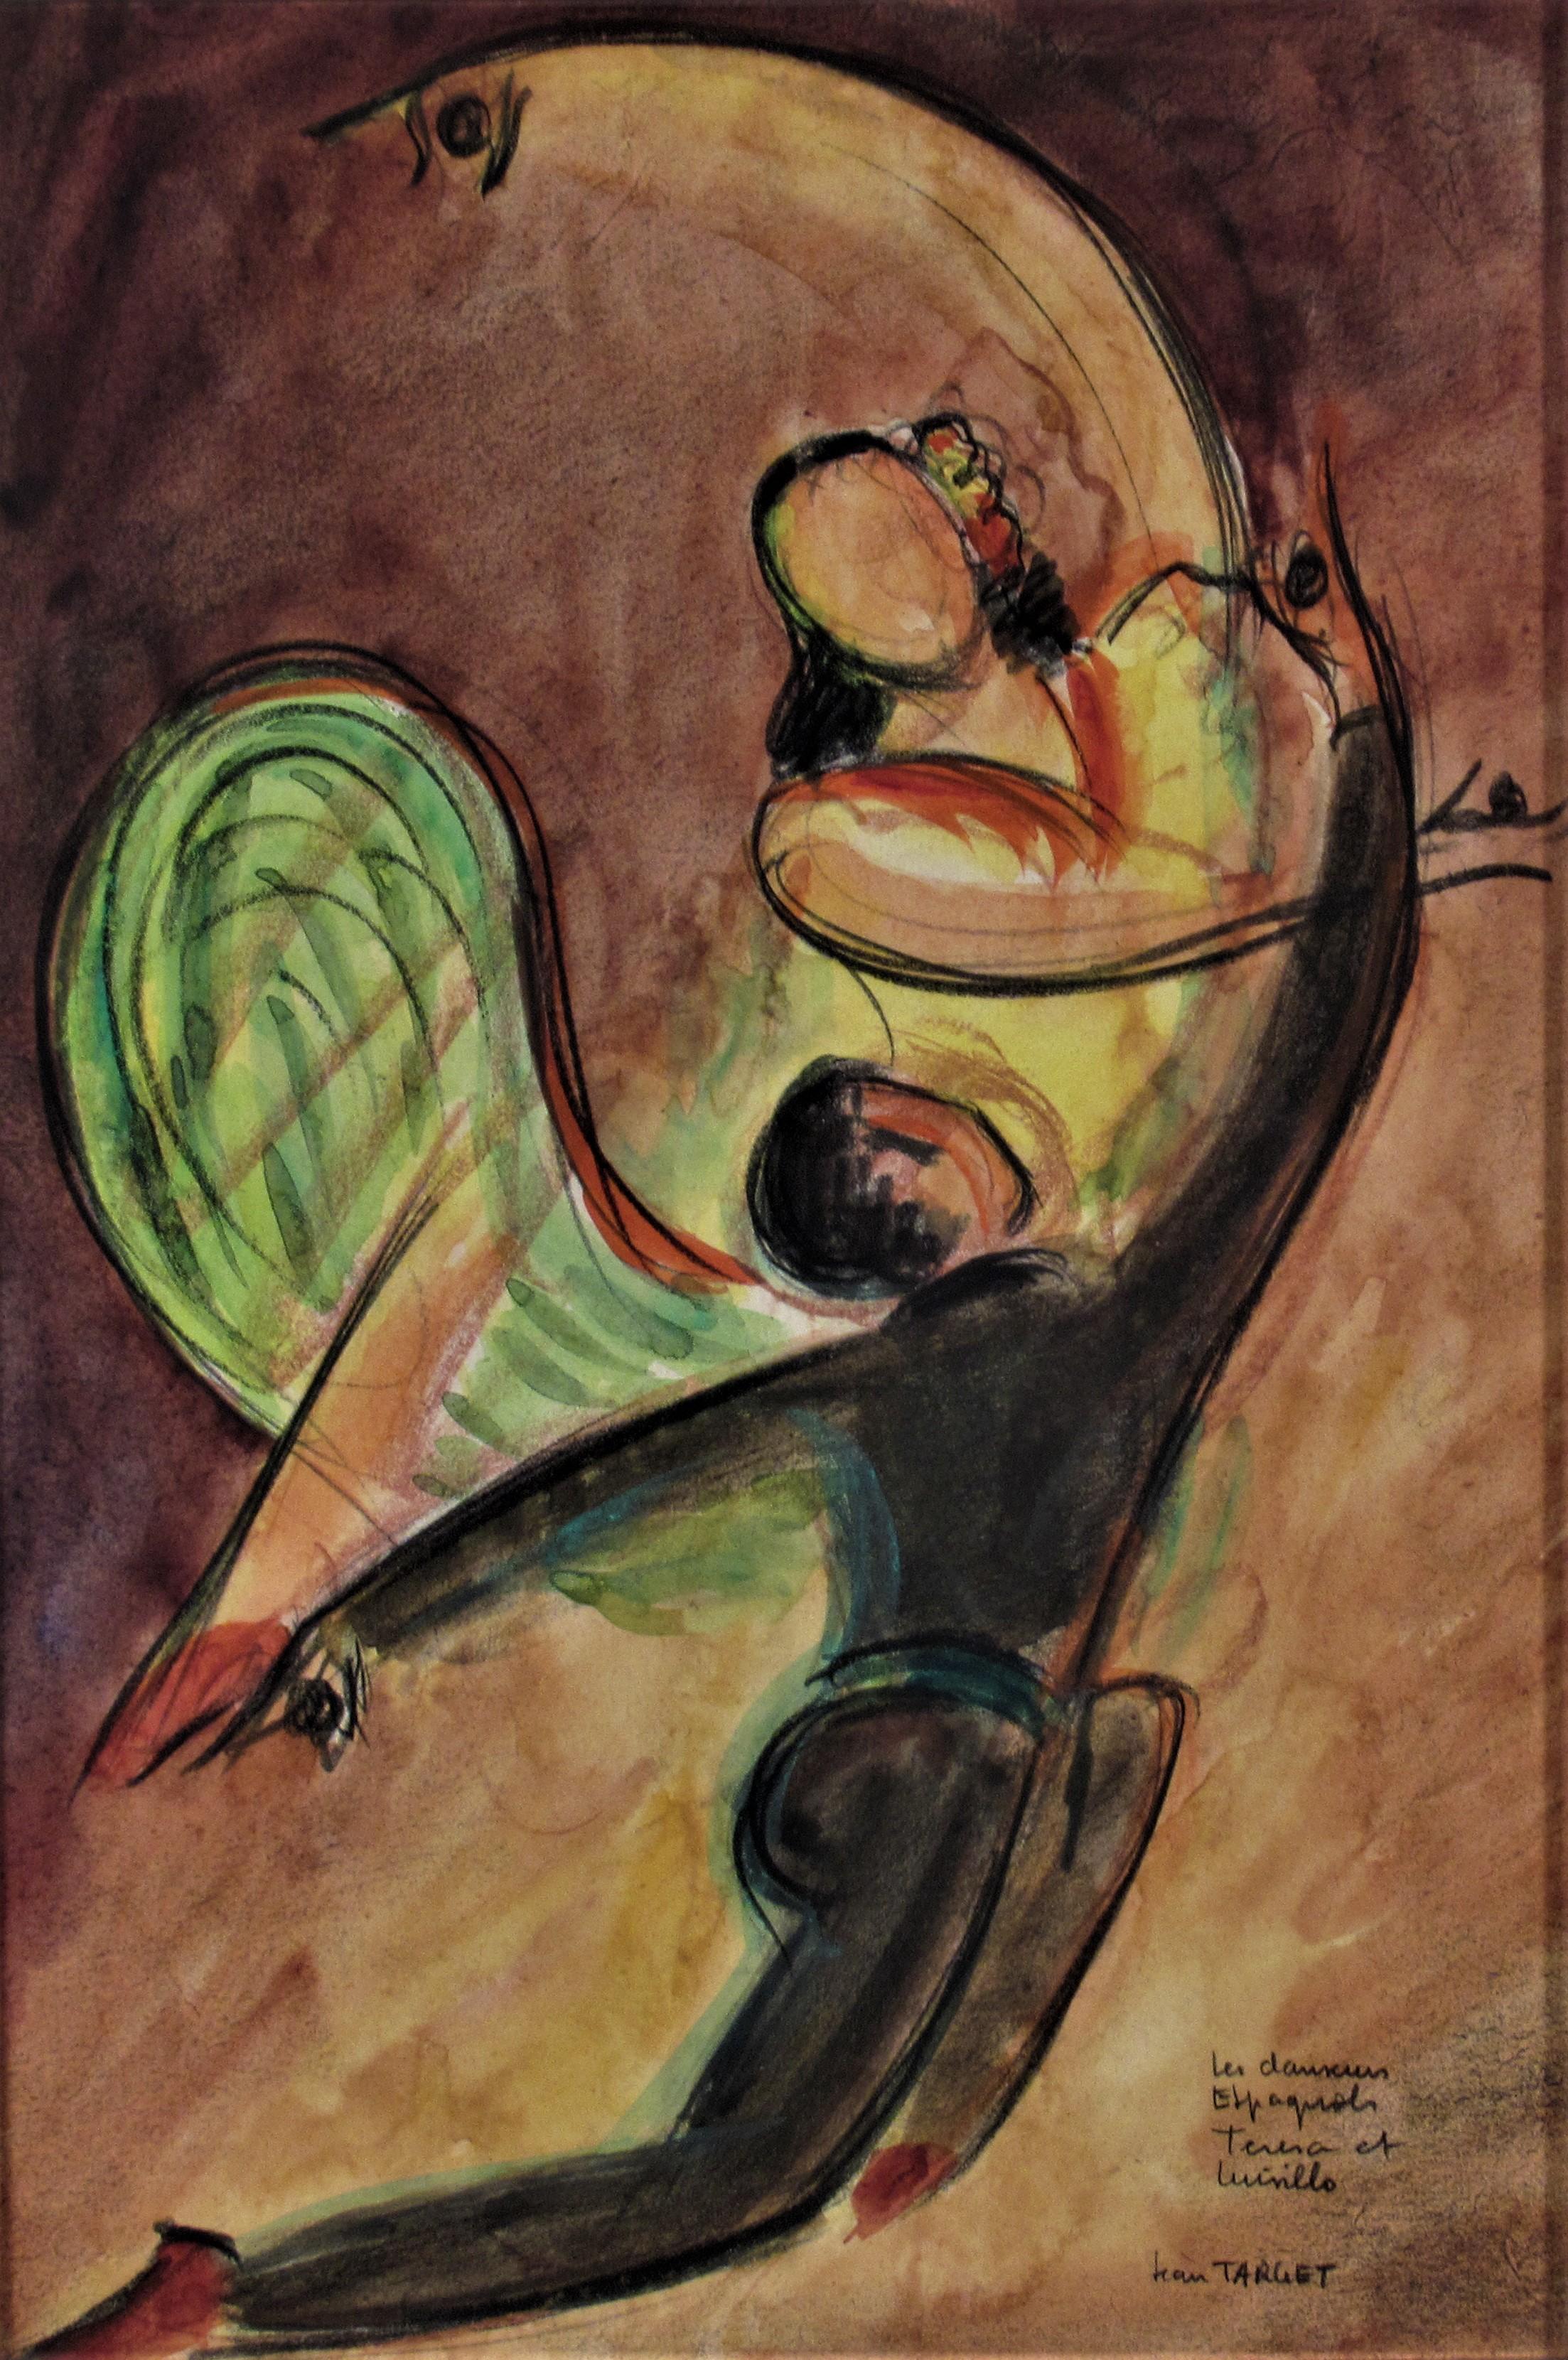 Les Danseurs Espagnols Teresa and Luisillo - Art by Jean Target